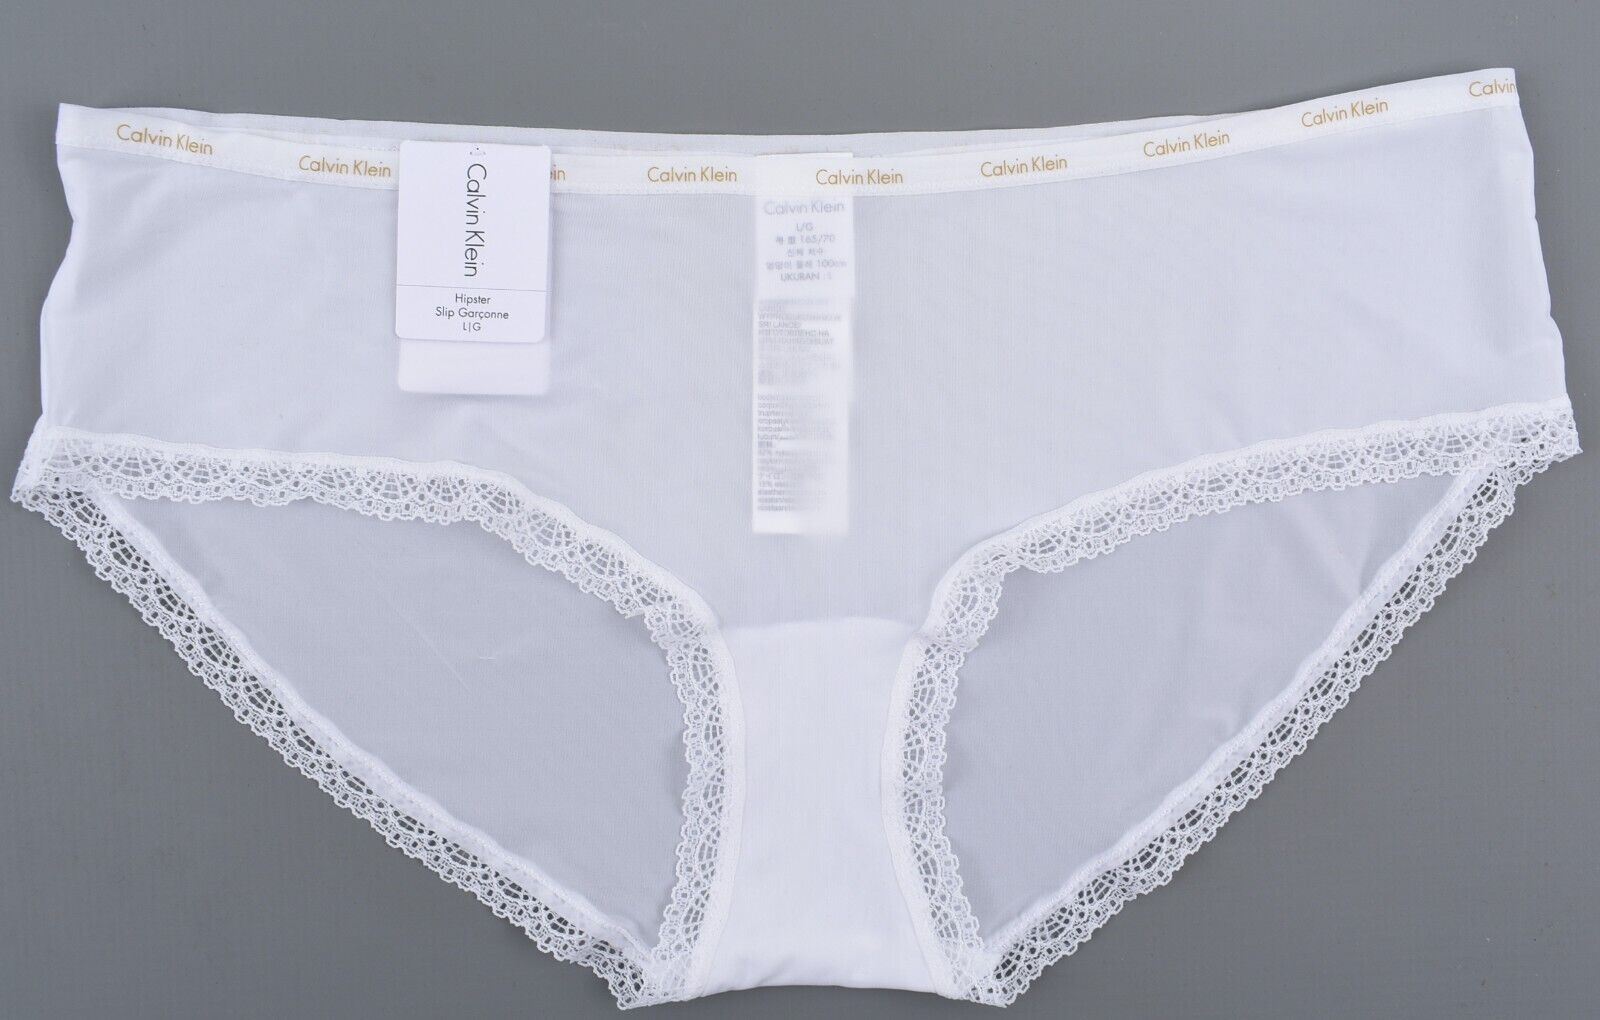 CALVIN KLEIN Underwear: Bottoms Up Women's Hipster Knickers, White, size L